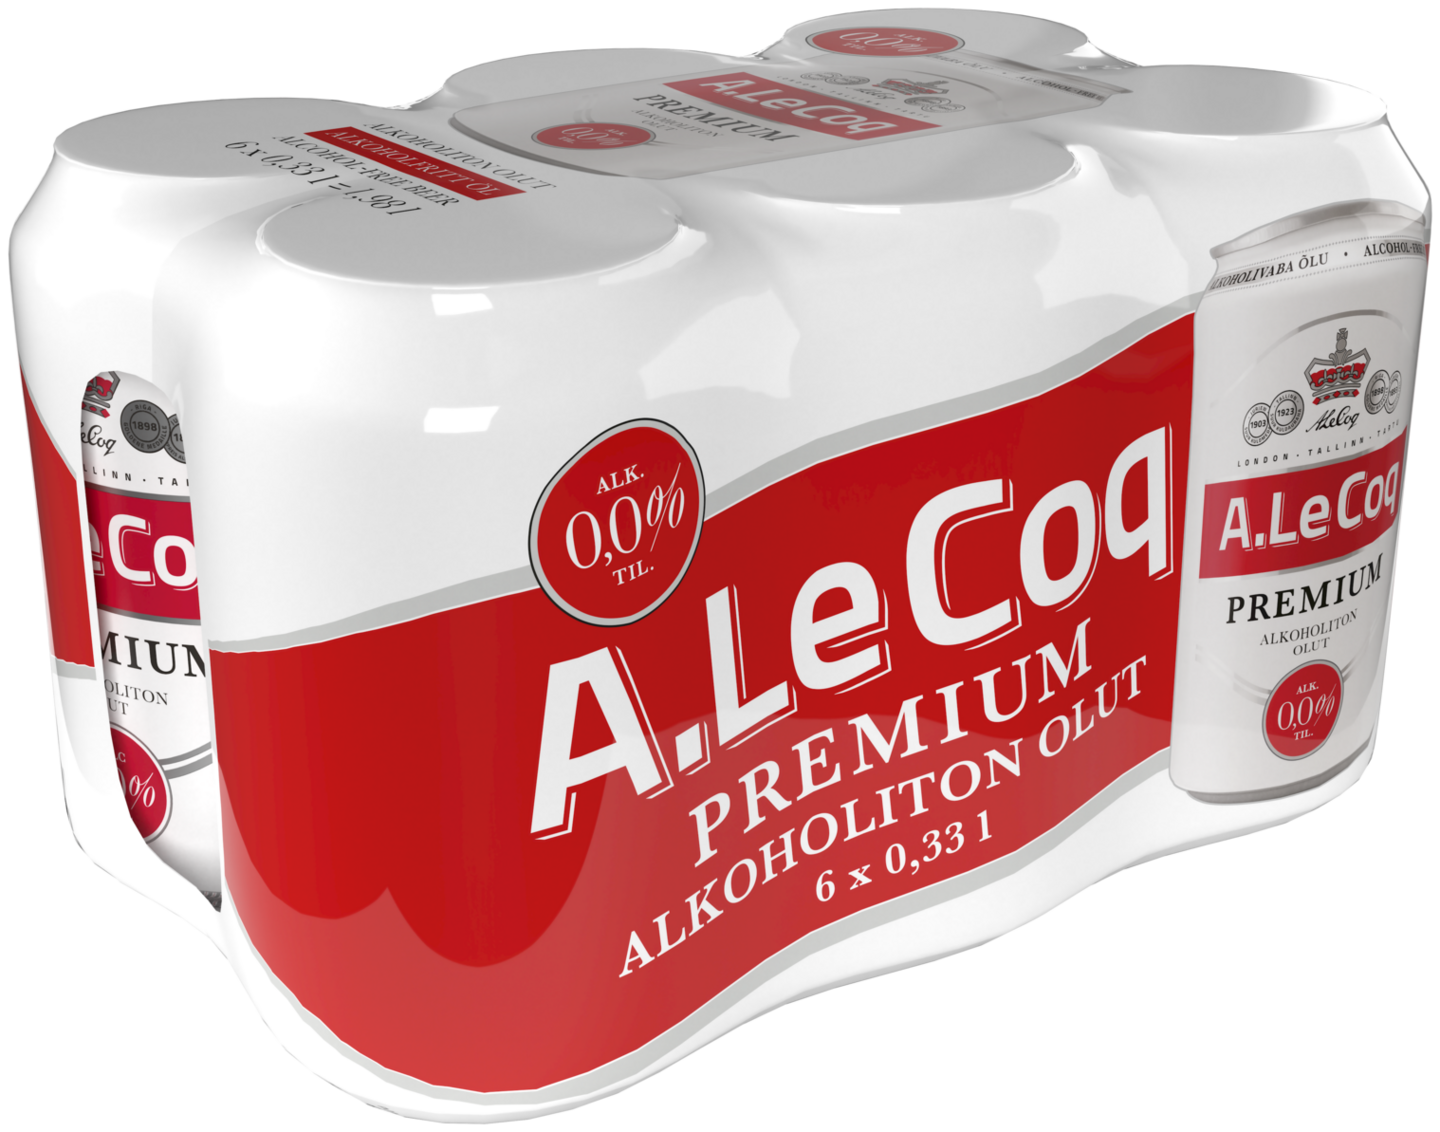 A.Le Coq Premium 0,0% 0,33l 6-pack